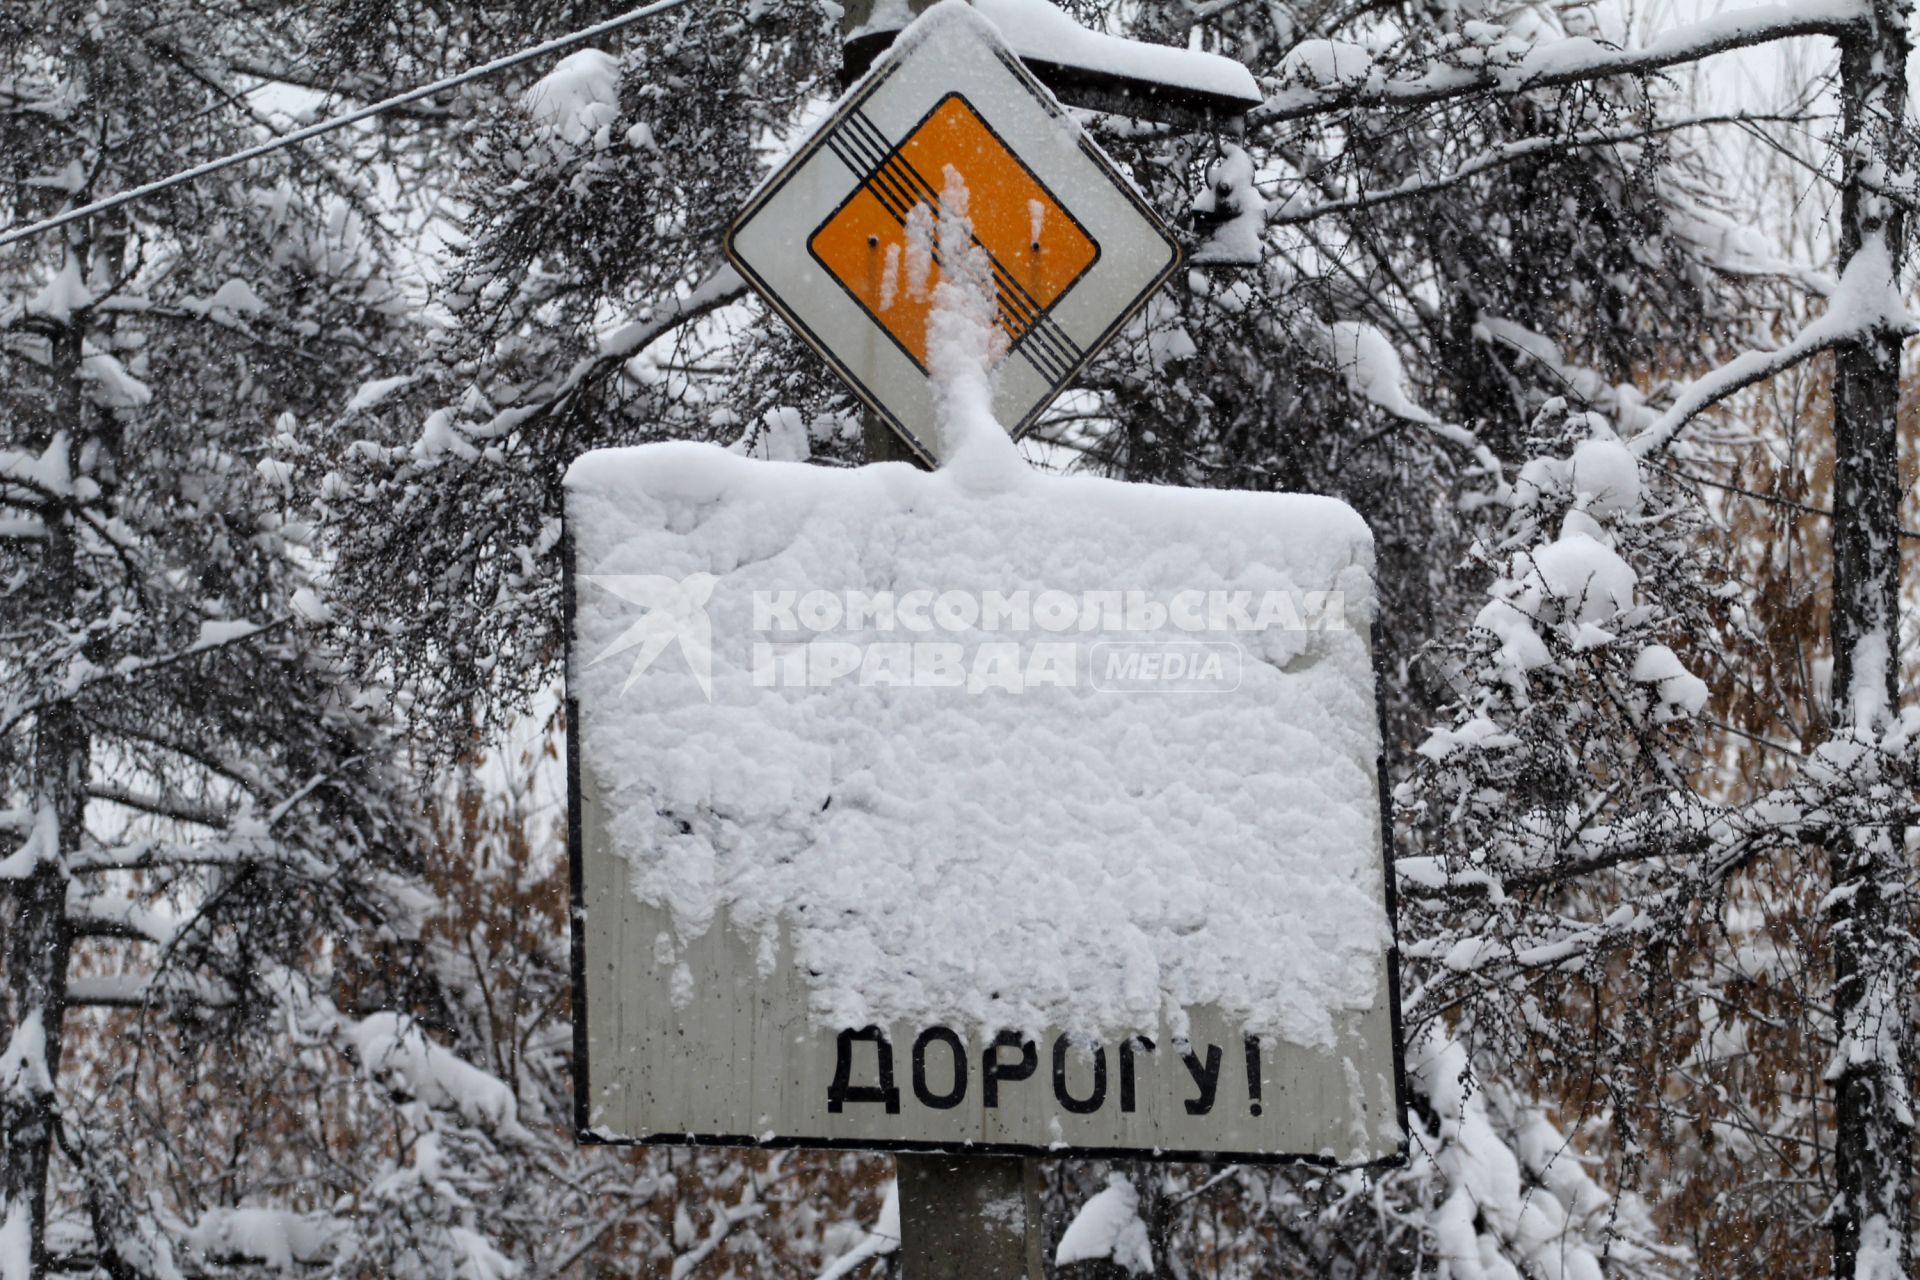 Иркутск. Дорожный знак занесенный снегом.